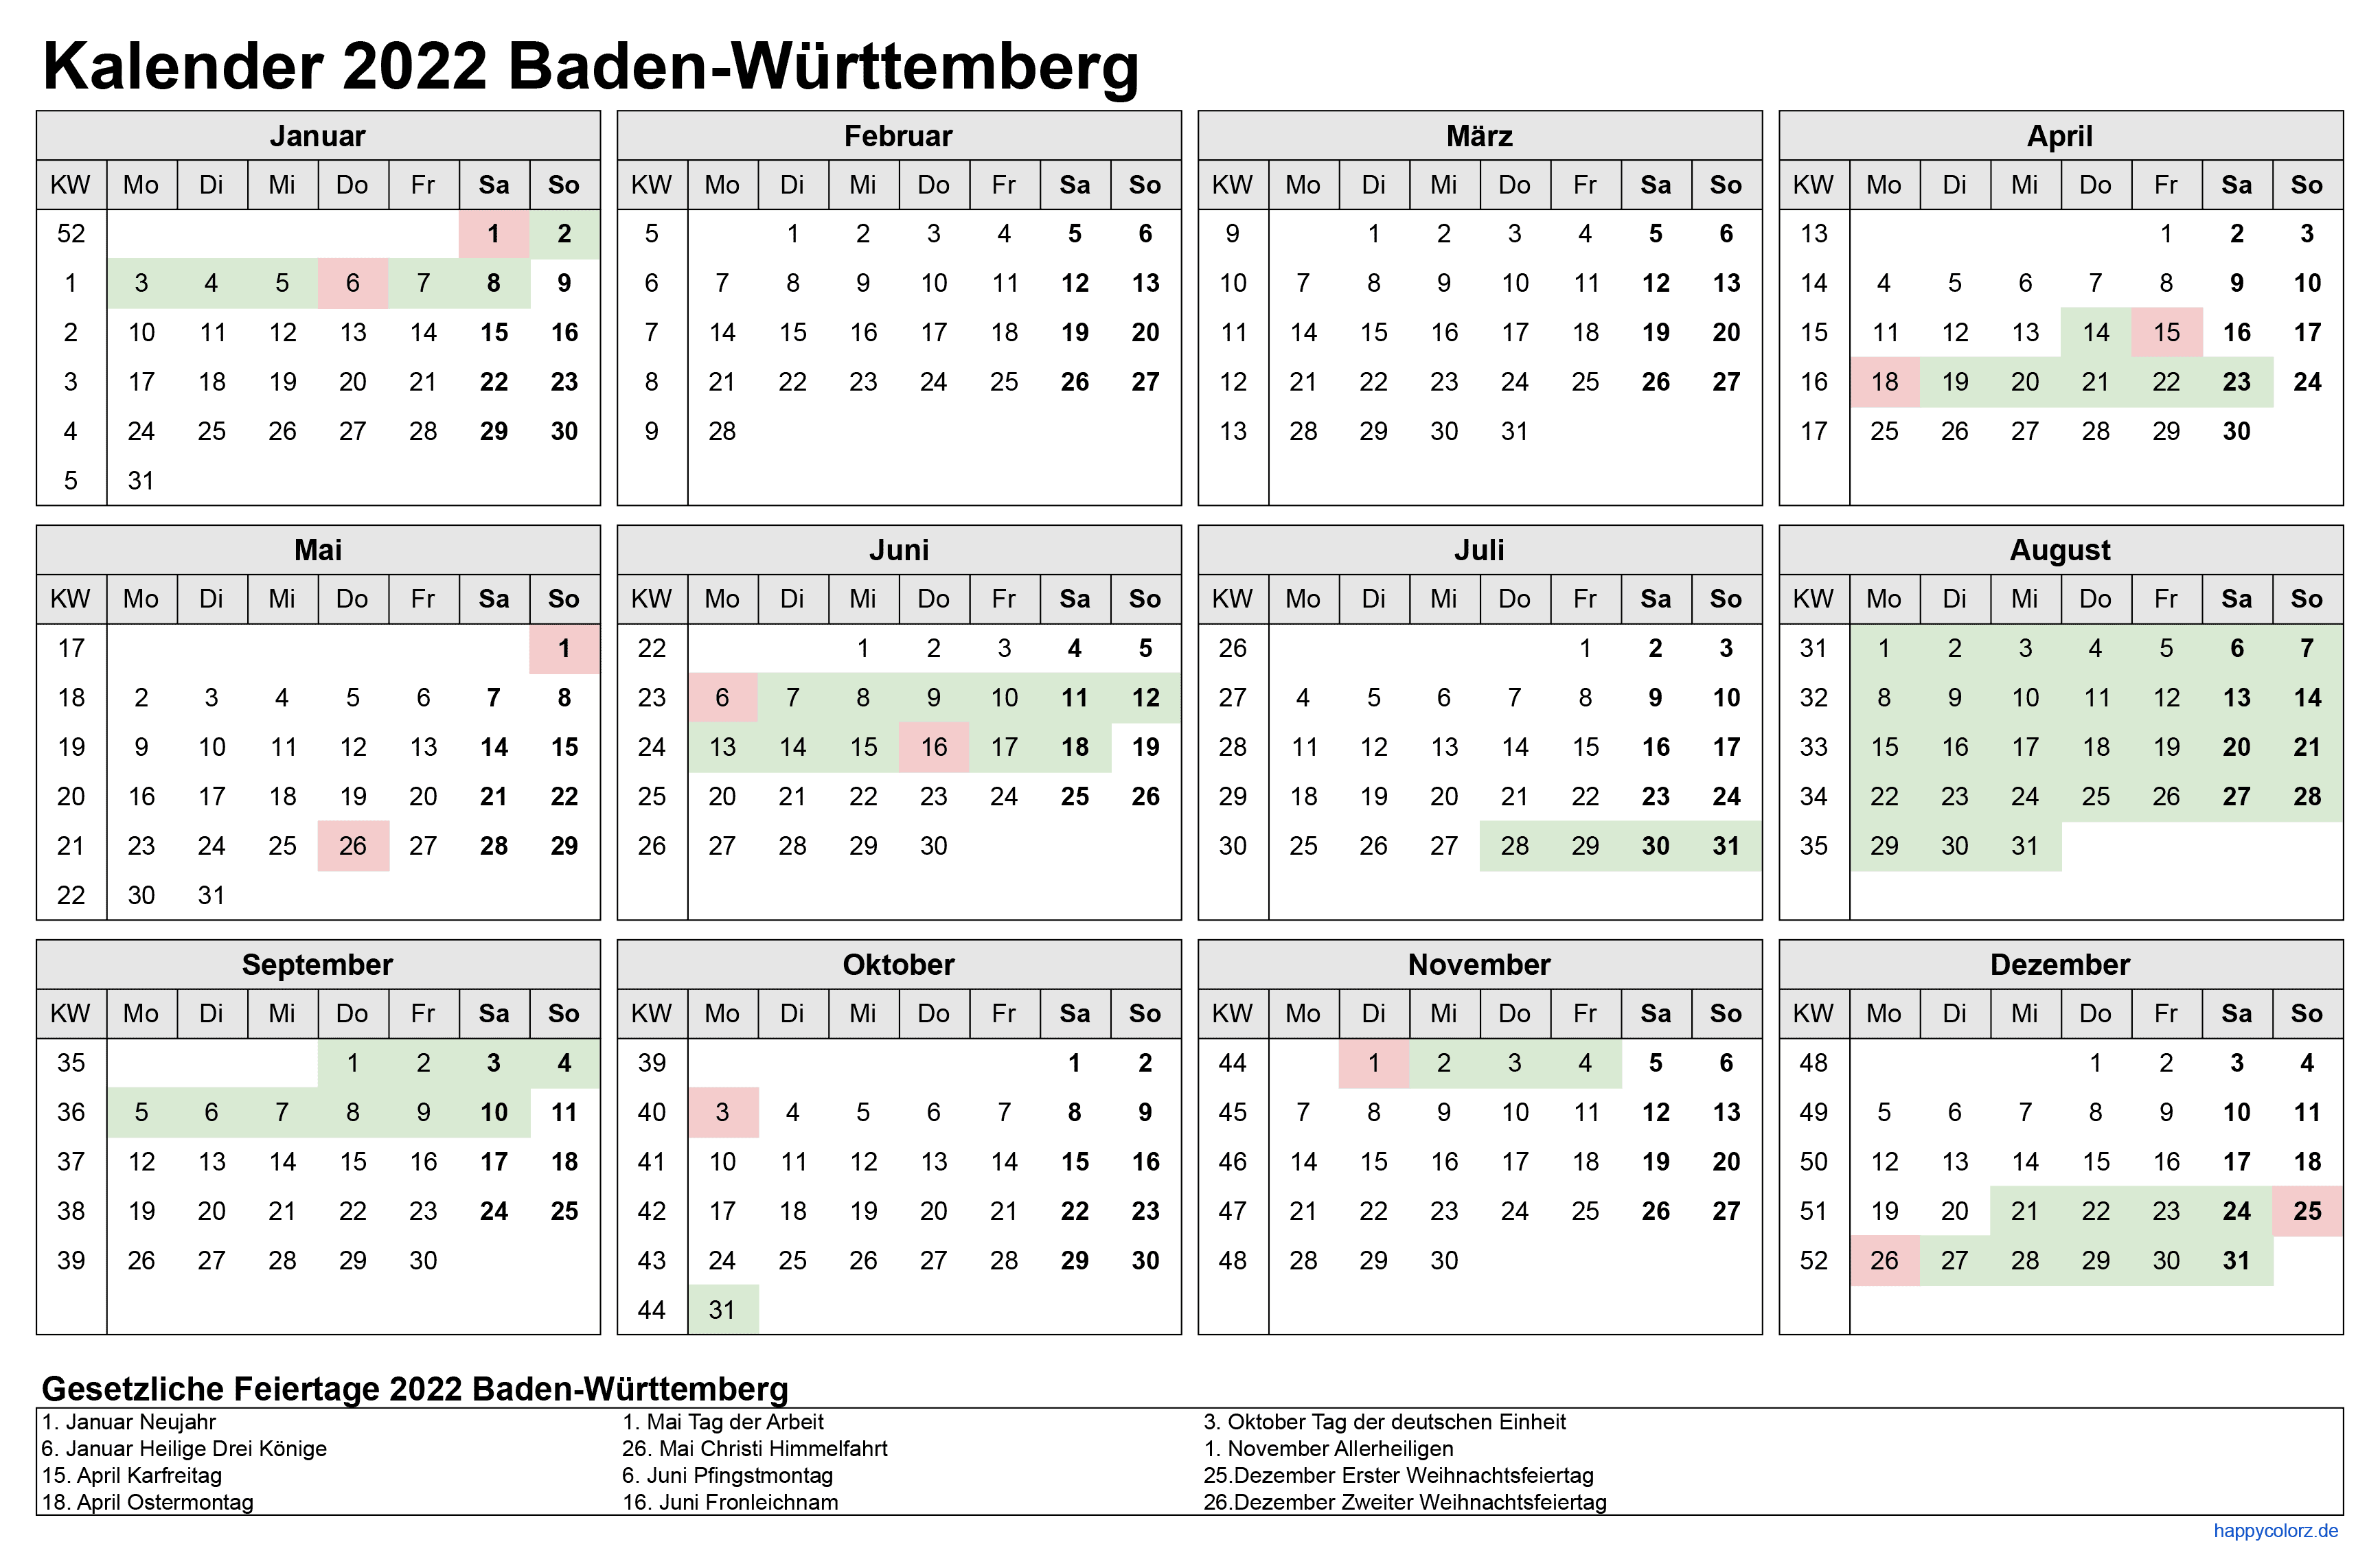 Kalender 2022 Baden-Württemberg zum Ausdrucken